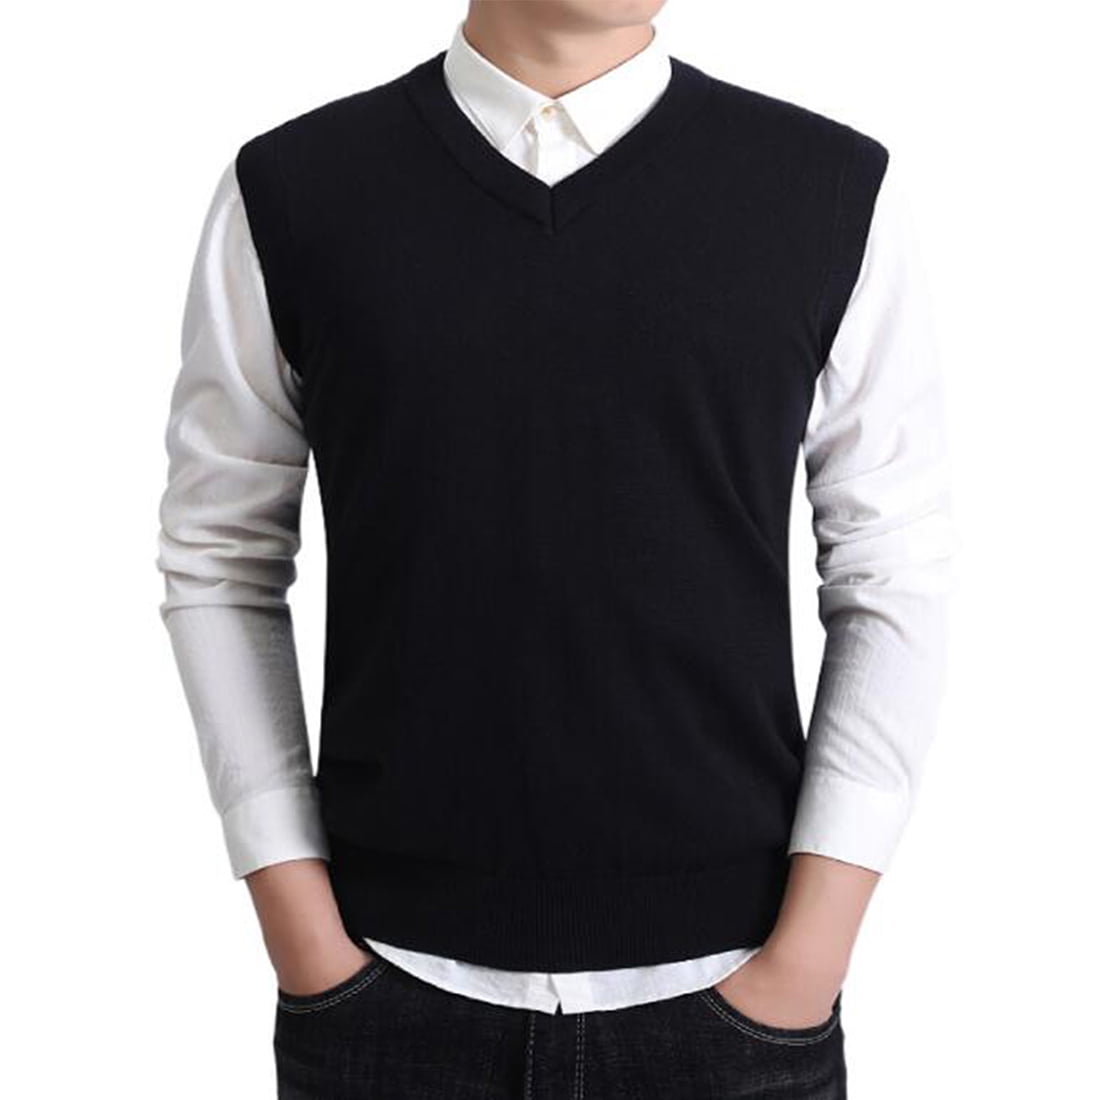 Hanerdun Mens V-Neck Sleeveless Knitted Pullover Sweater Vests Black ...